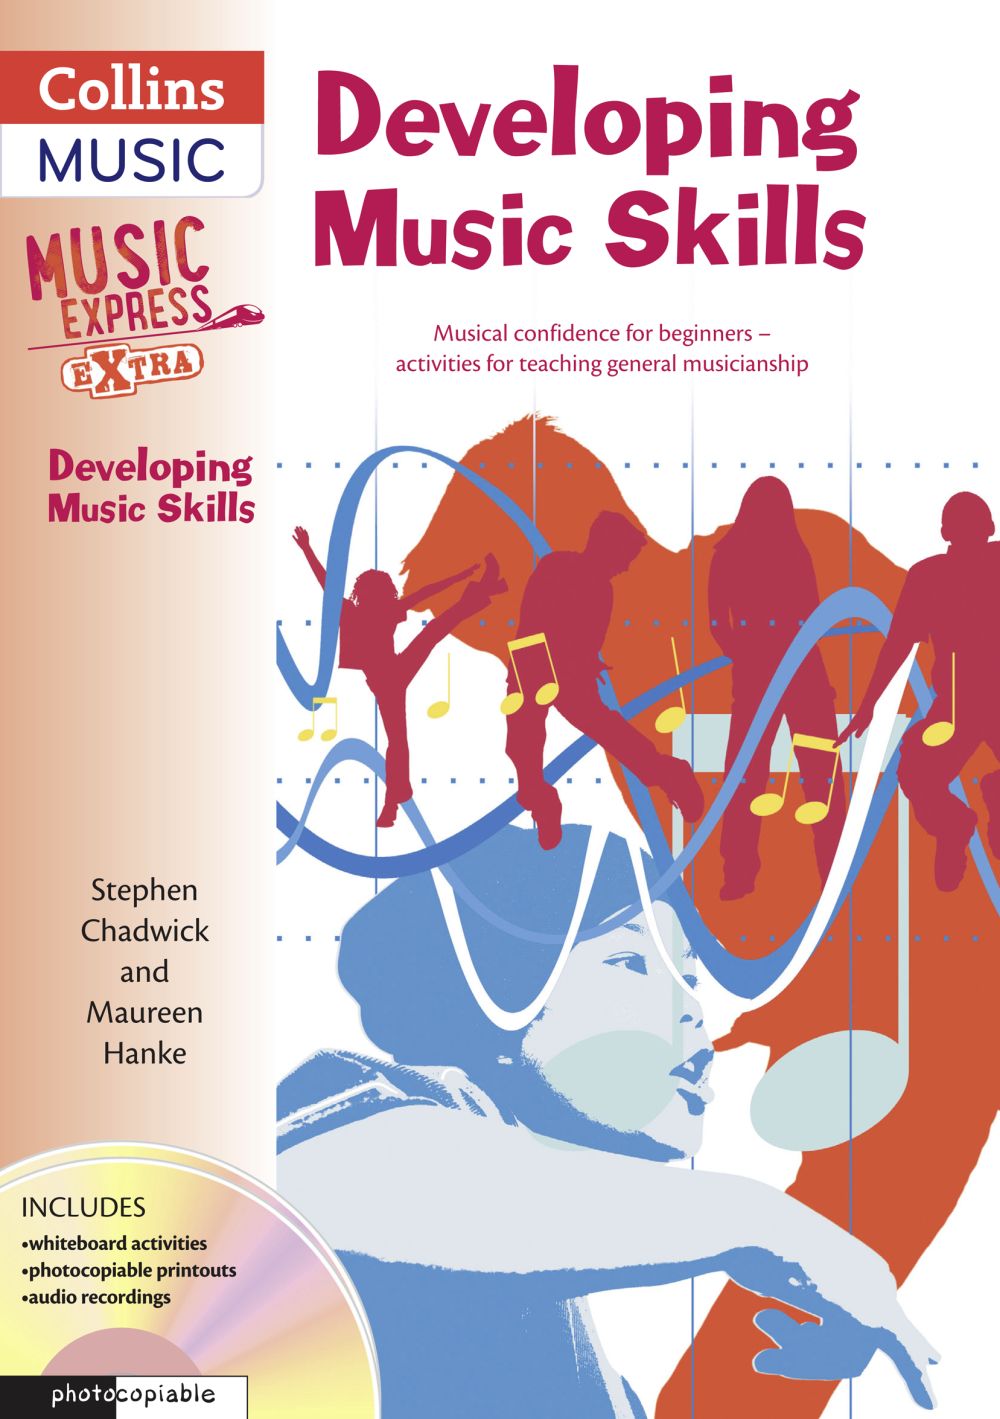 Maureen Hanke: Developing Music Skills: Theory